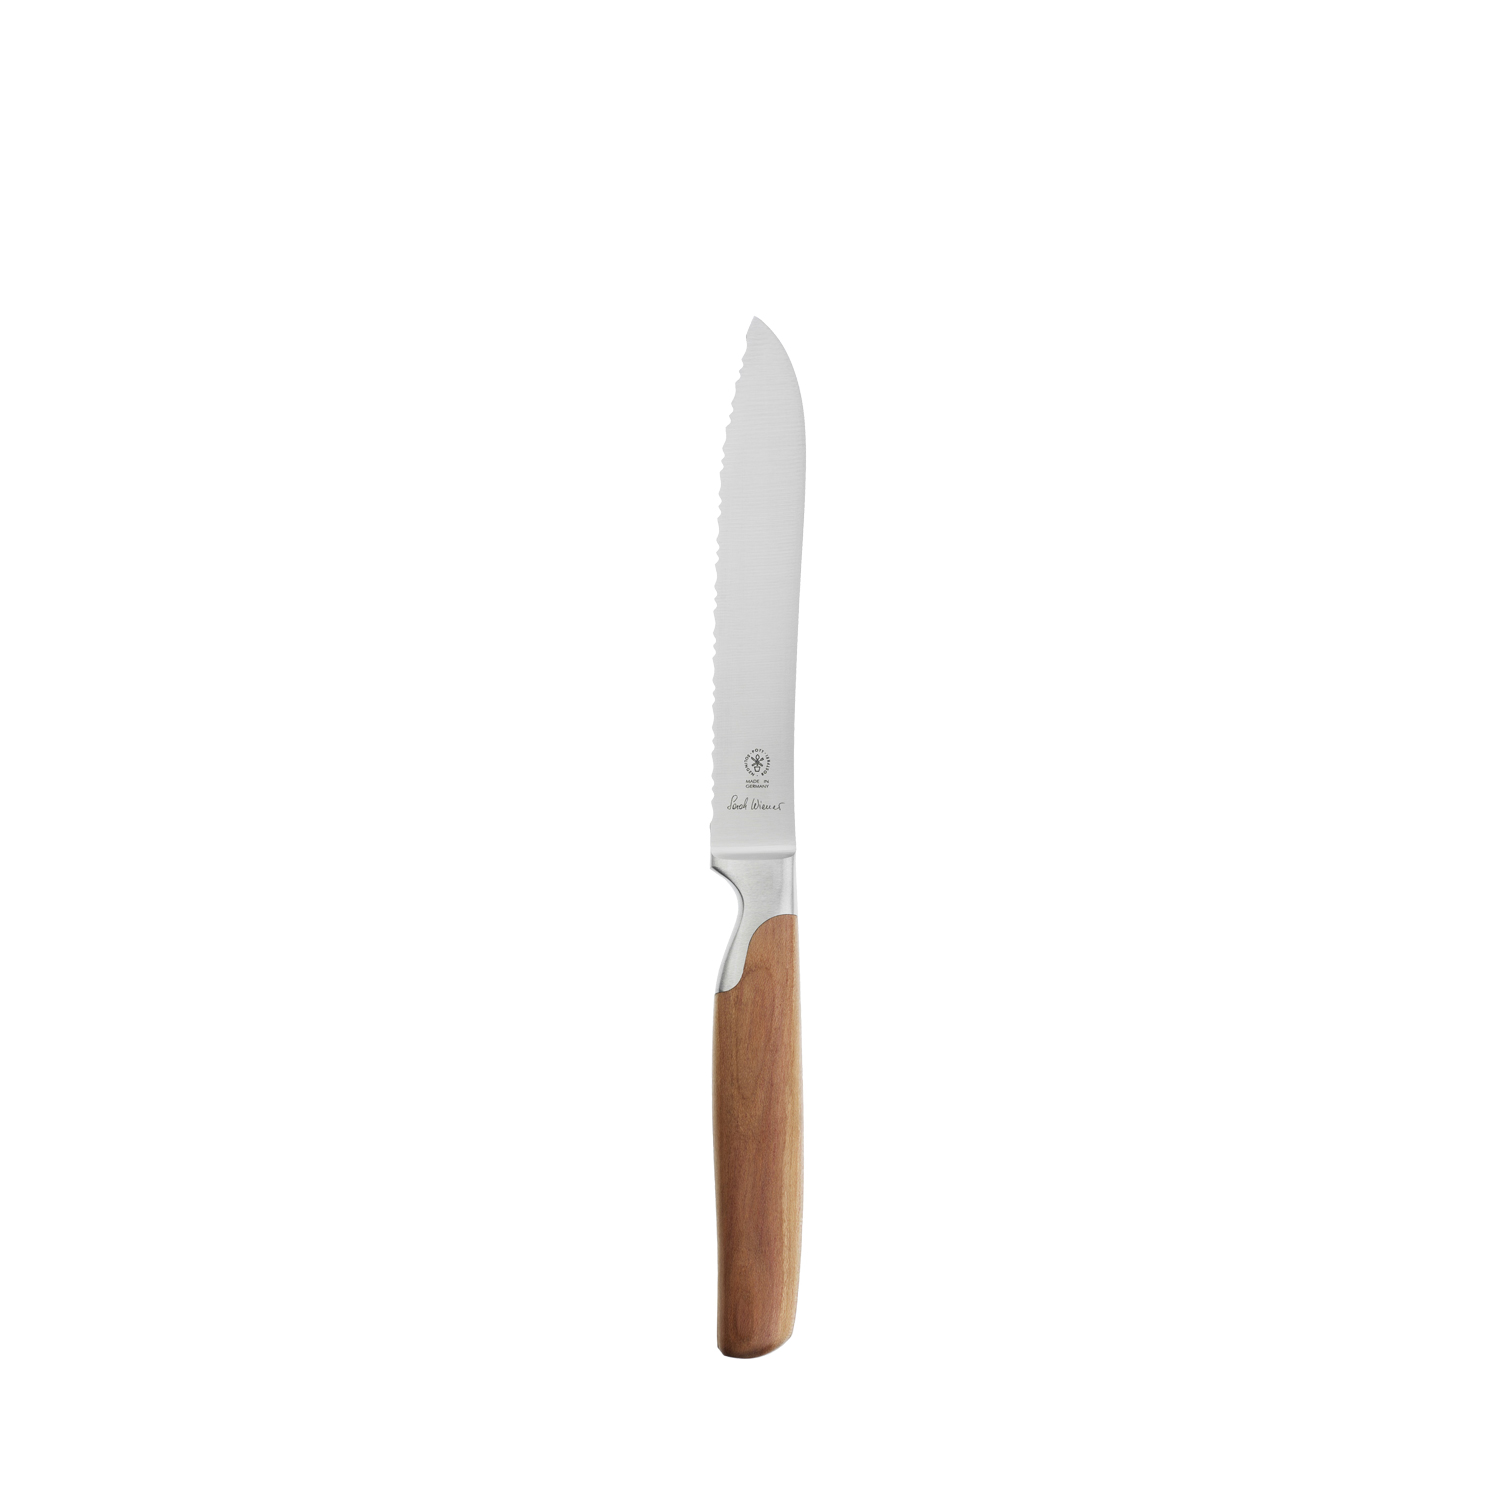 2810 170 Pott Sarah Wiener Messer Knives